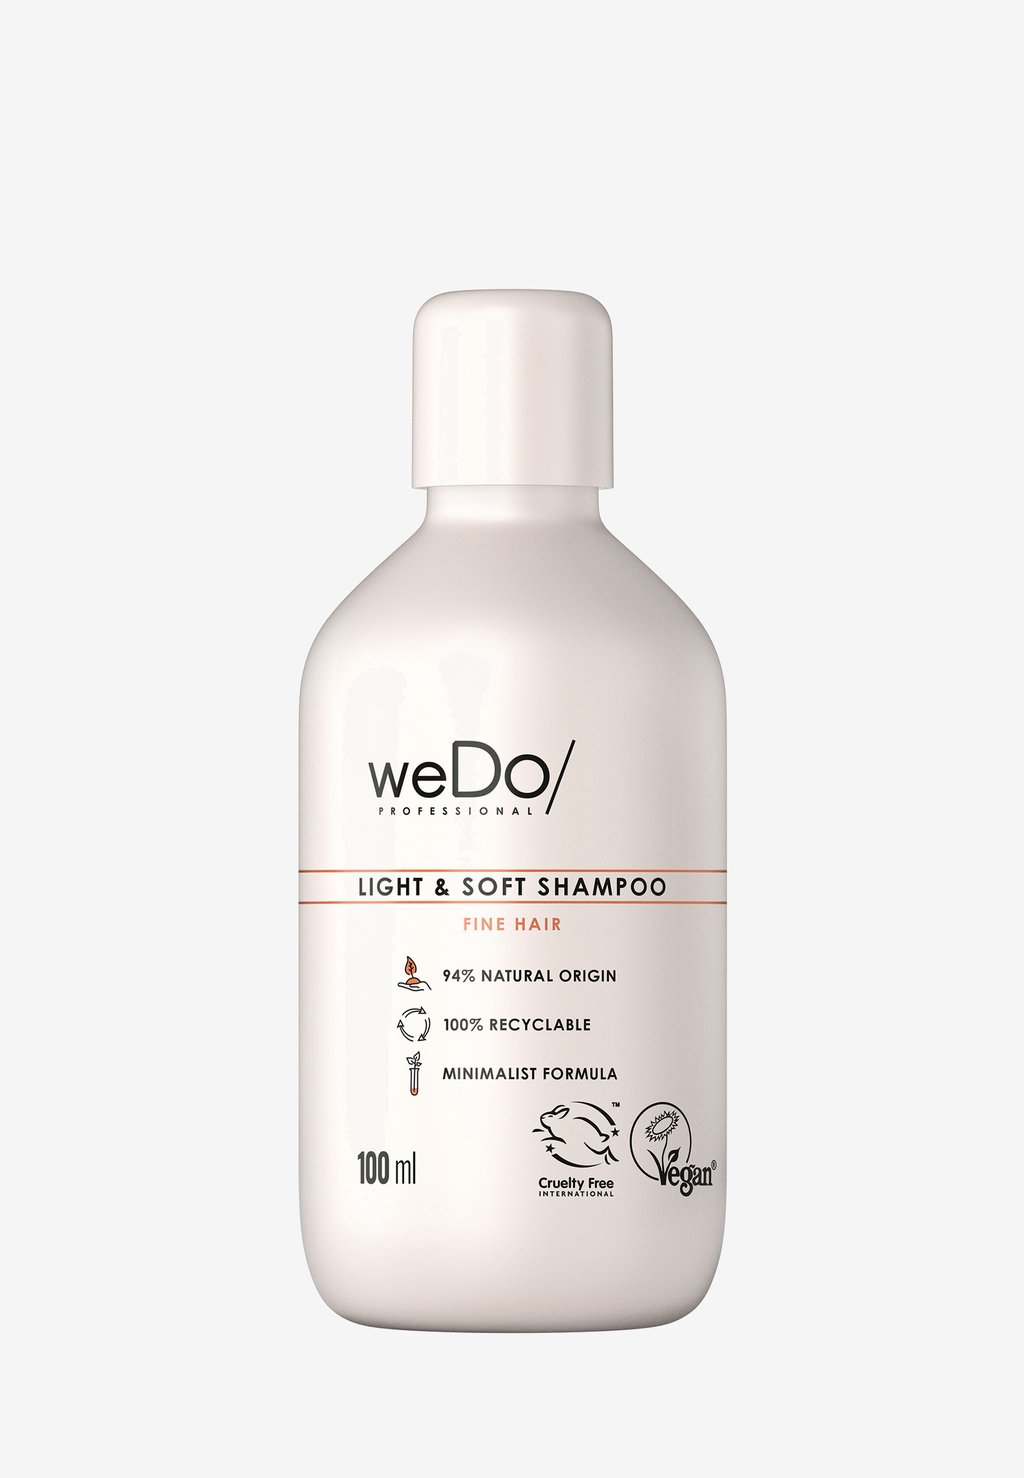 Шампунь Light & Soft Shampoo weDo/ Professional